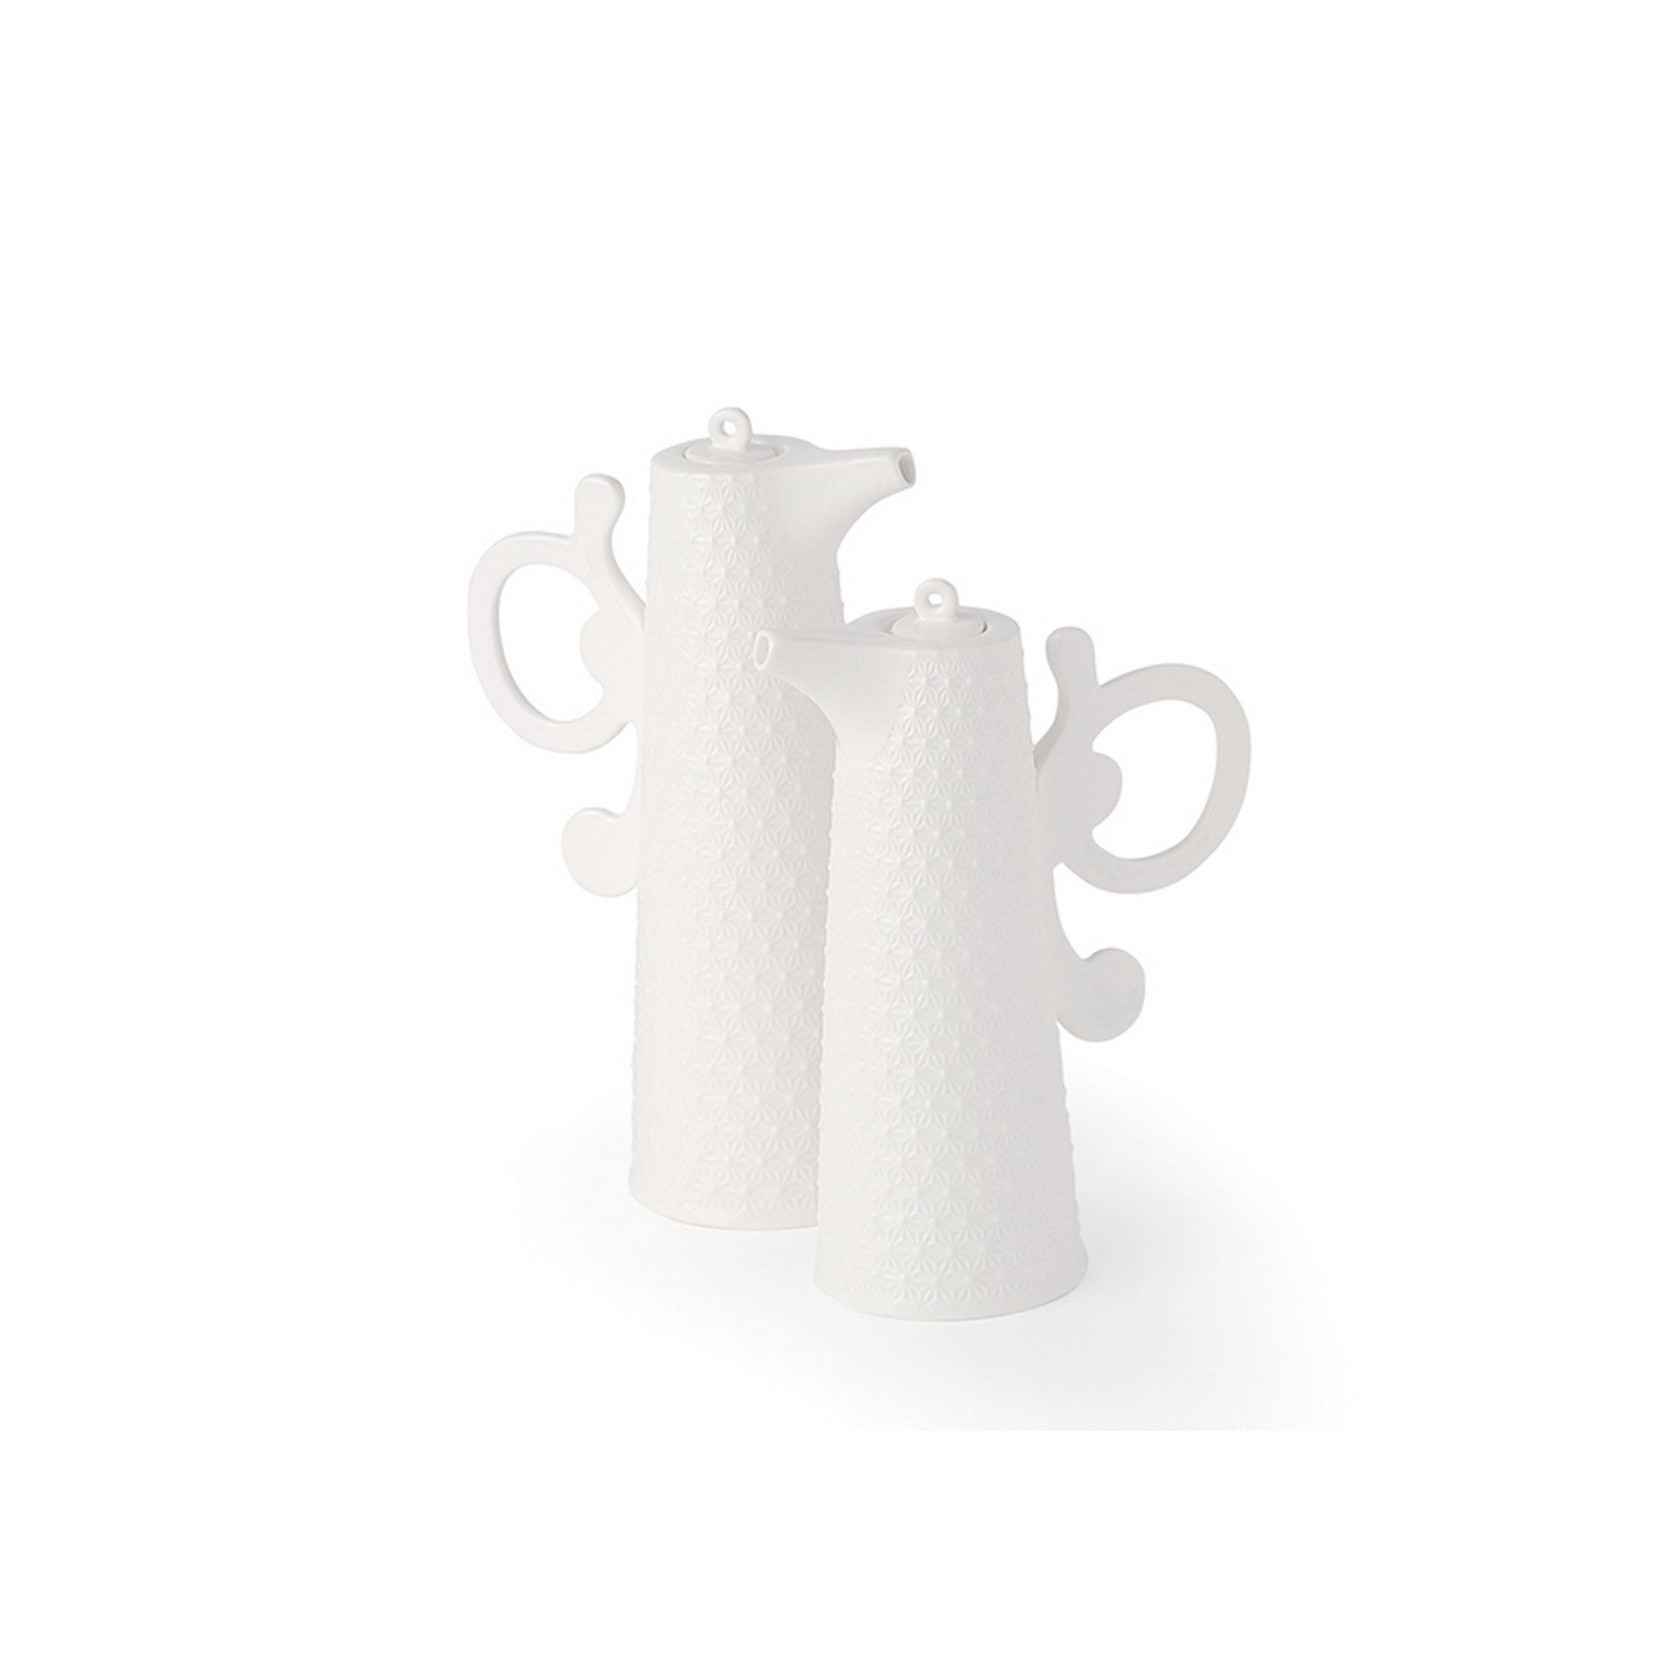 Set Olio e aceto ceramica Avorio e bianco e scatola d 80h140mm art 02704